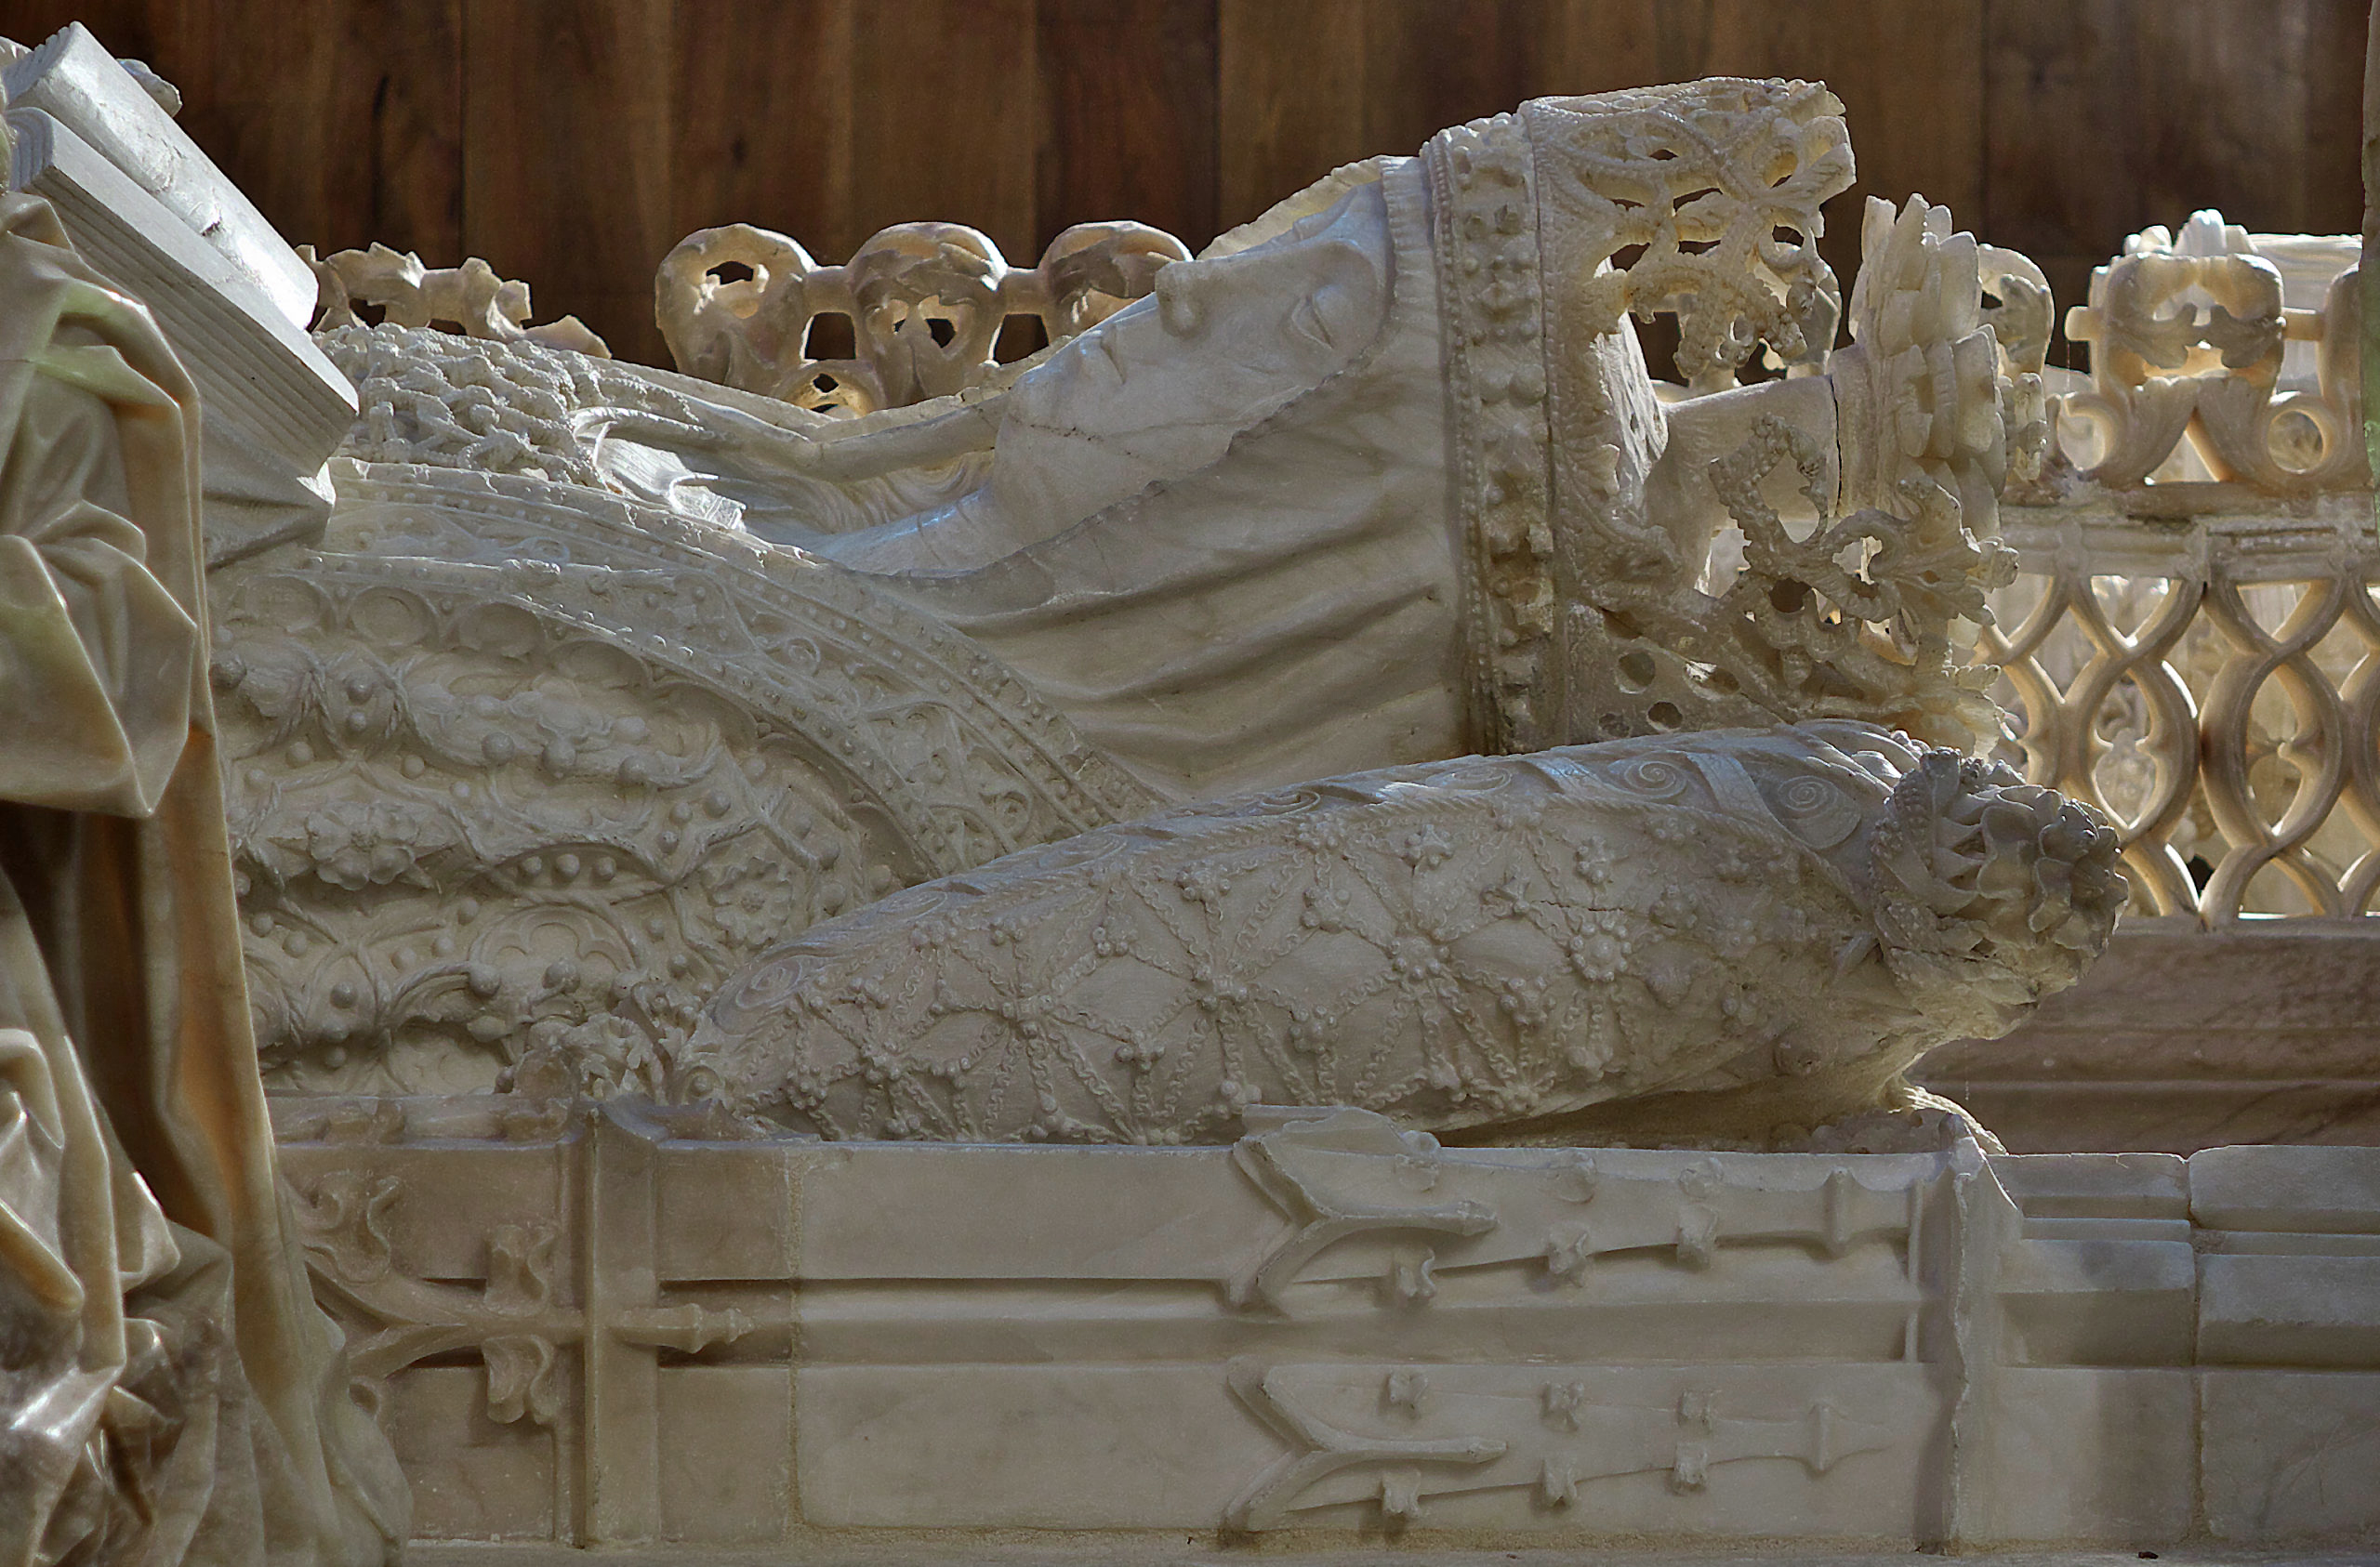  Gil de Siloe, The Tomb of Juan II of Castile and Isabel of Portugal, detail of Isabel of Portugal, 1489-93, alabaster (photo: Jose Luis Filpo Cabana, CC BY 3.0)